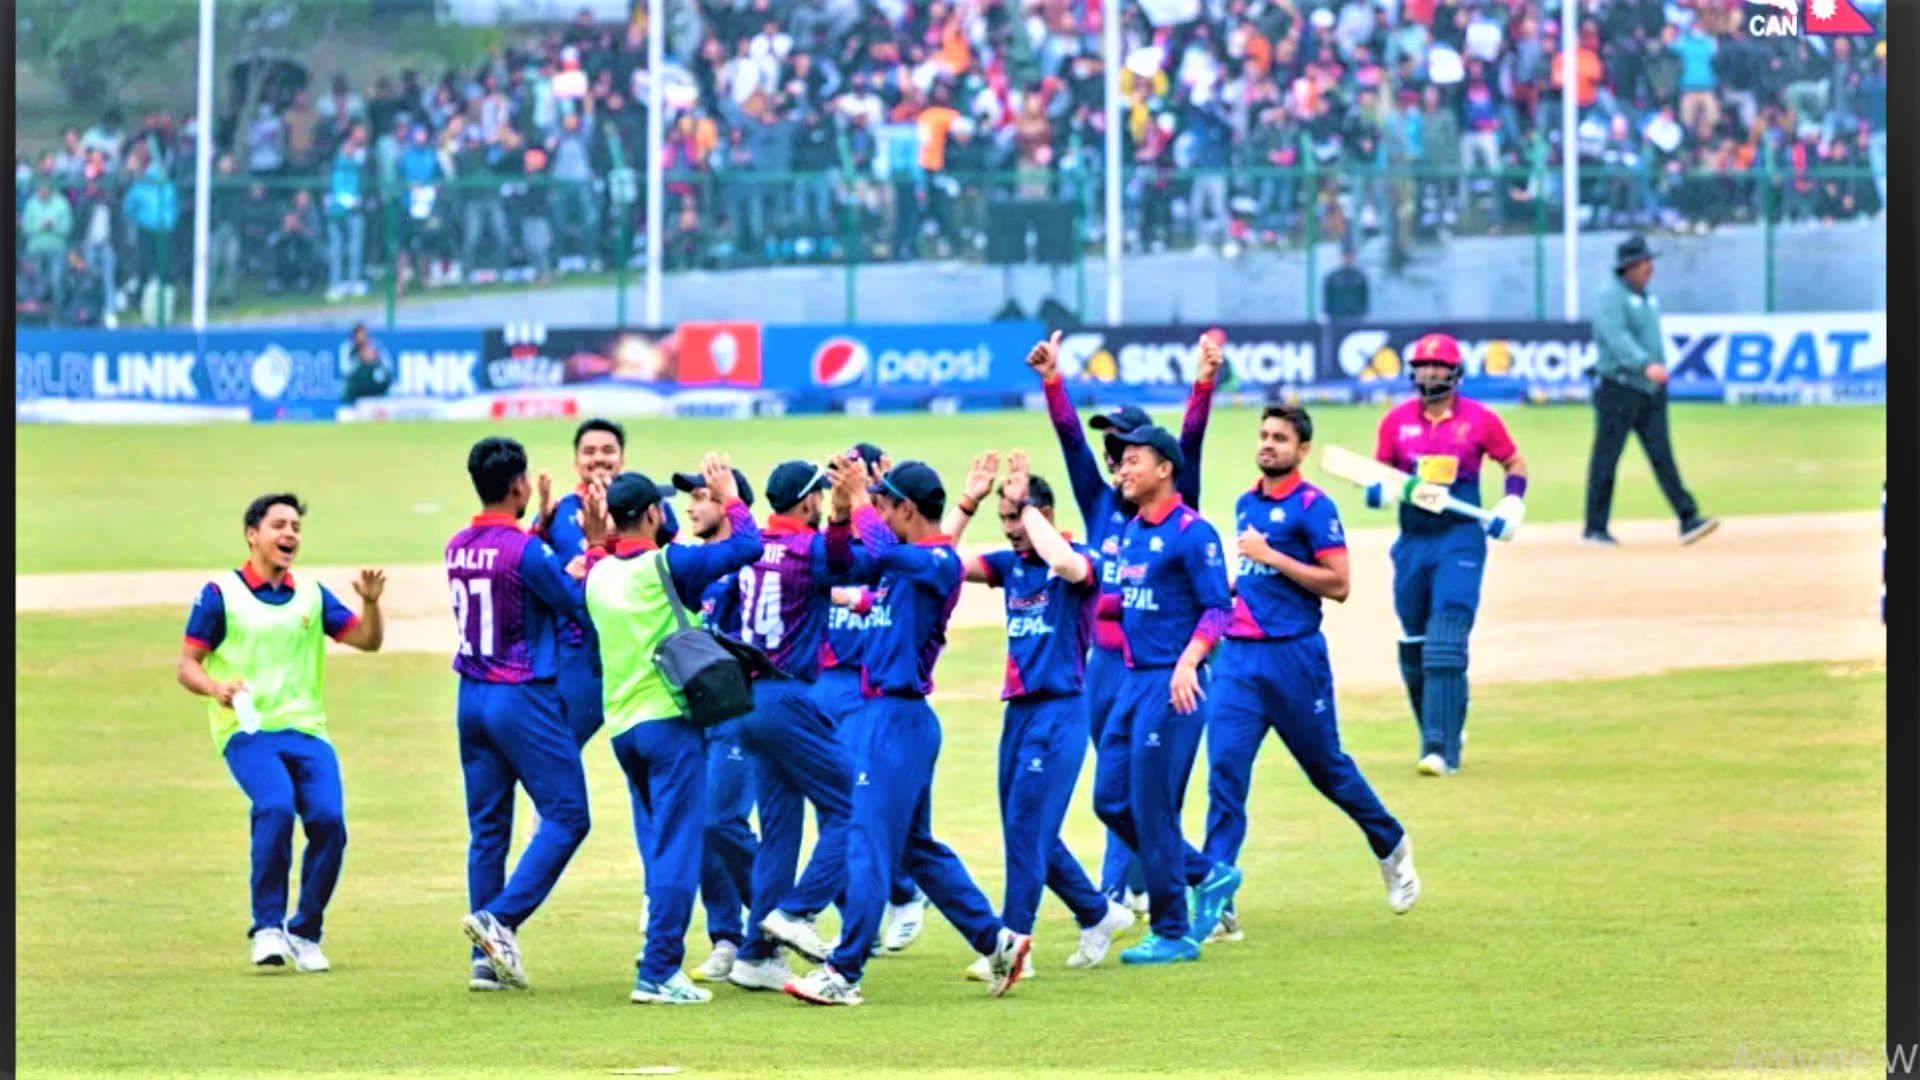 त्रिकोणात्मक सिरिजका लागि नेपाली राष्ट्रिय क्रिकेट टोलीको घोषणा